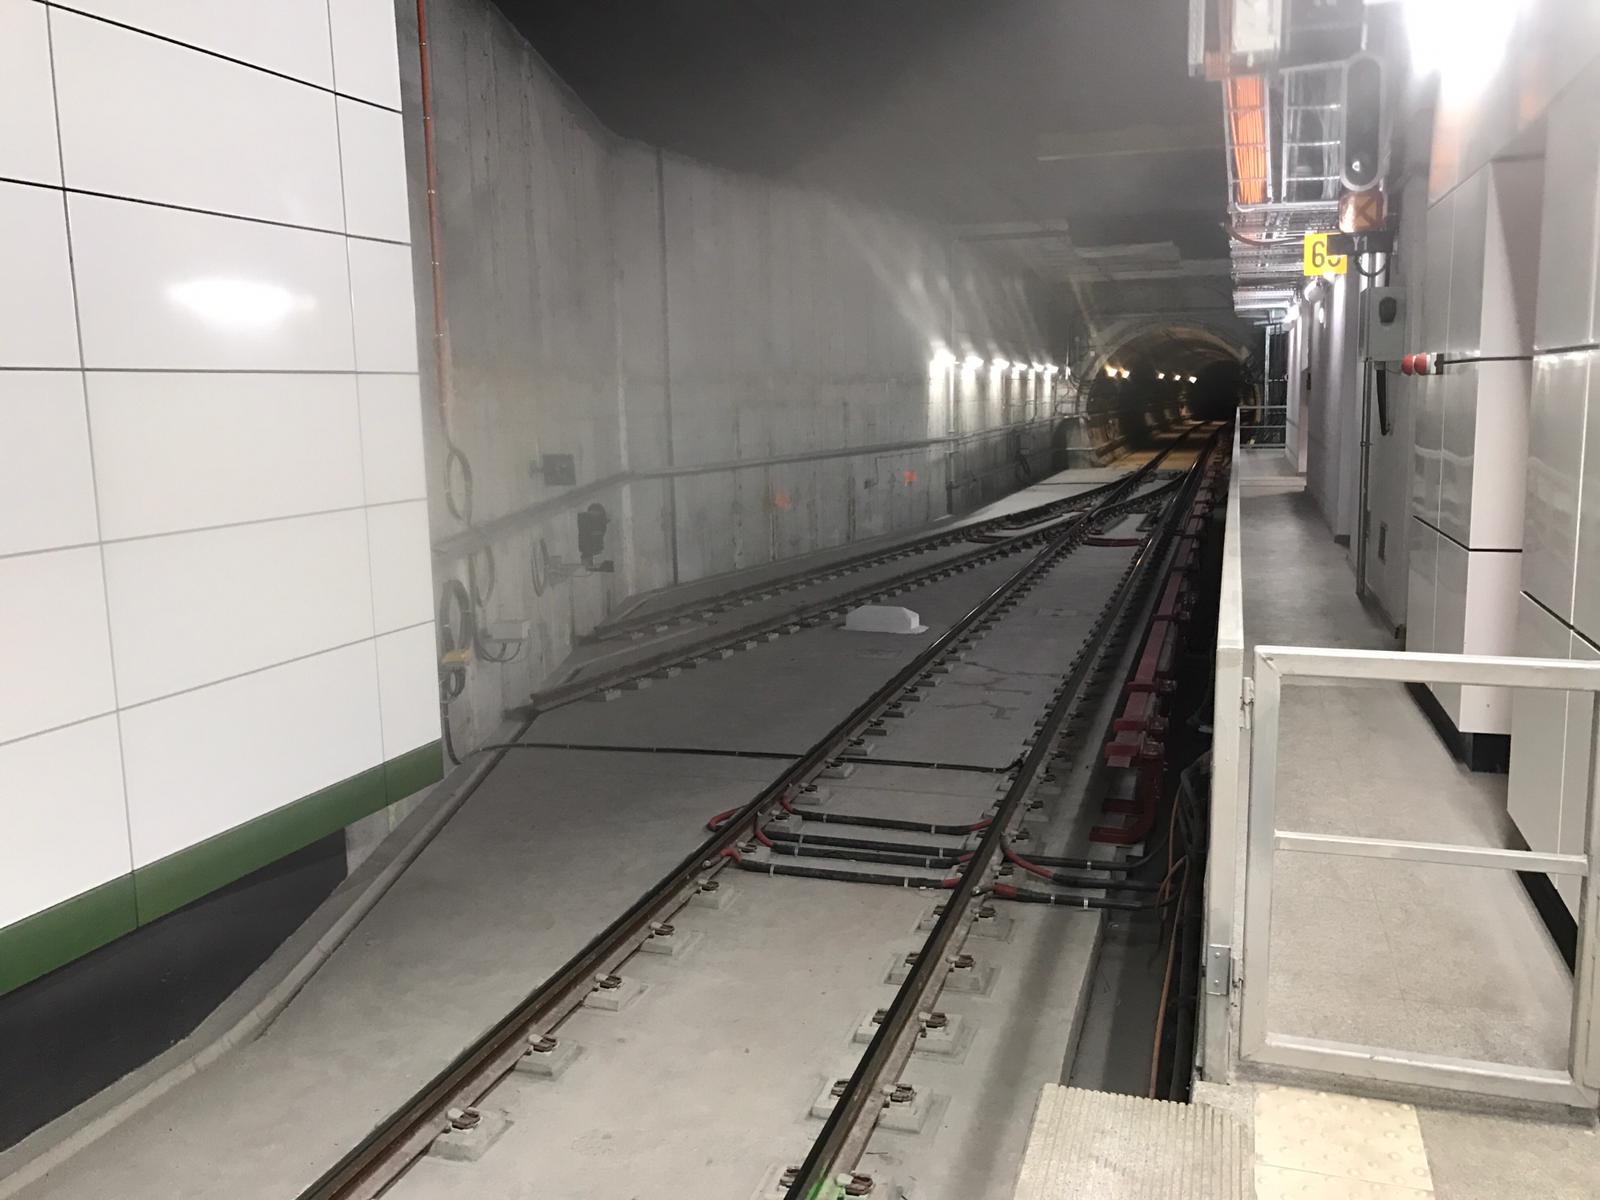 Metroul e blocat de un protest spontan al membrilor sindicatului USLM